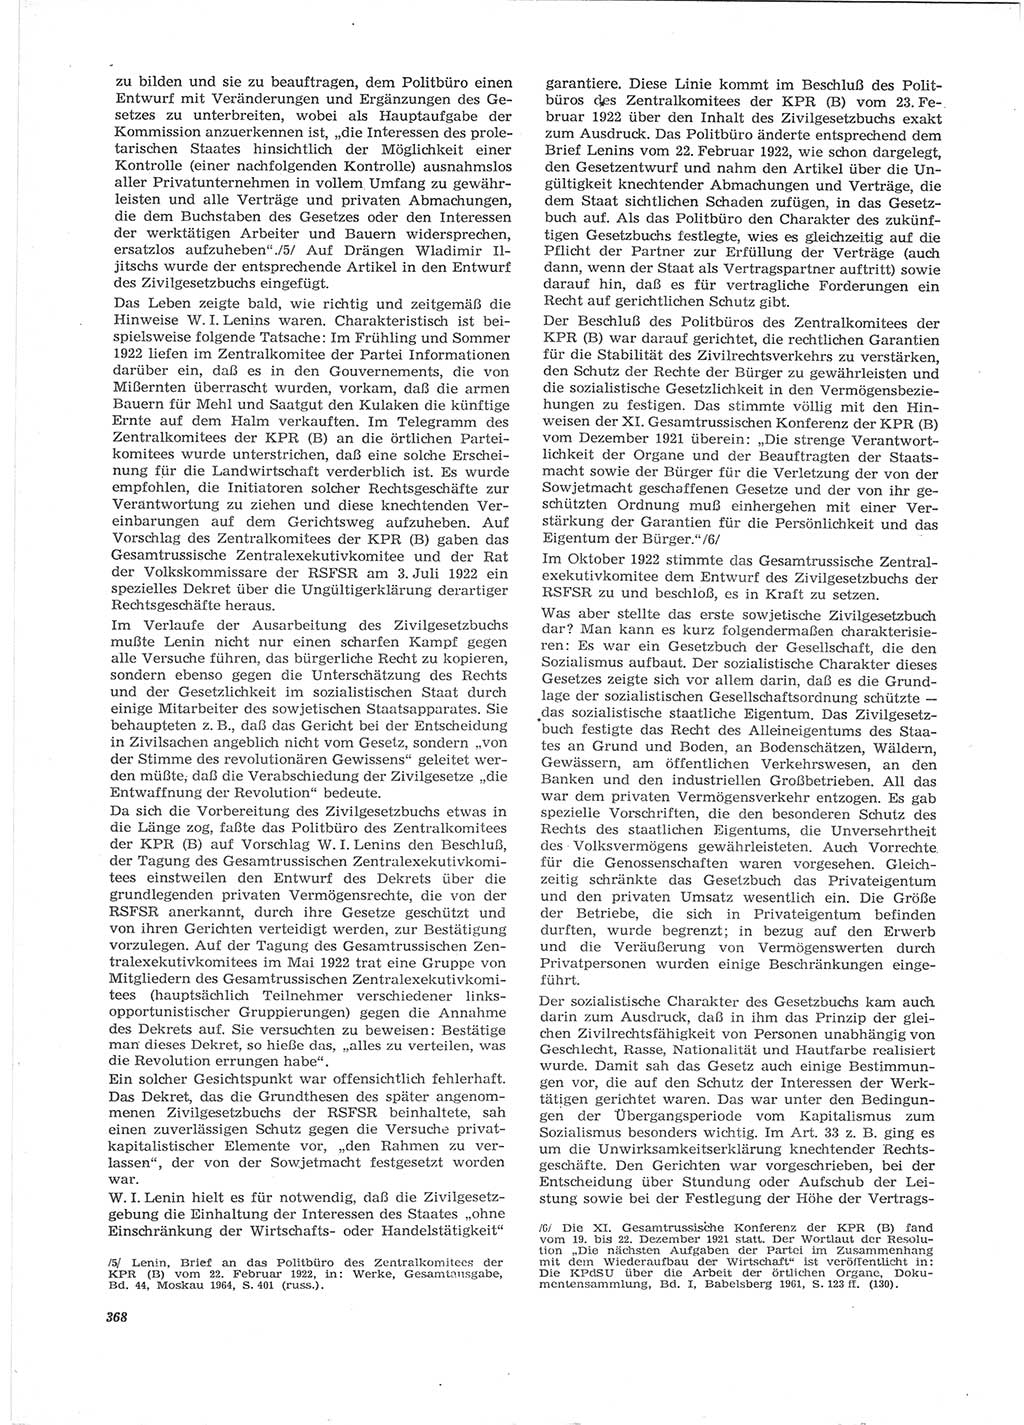 Neue Justiz (NJ), Zeitschrift für Recht und Rechtswissenschaft [Deutsche Demokratische Republik (DDR)], 28. Jahrgang 1974, Seite 368 (NJ DDR 1974, S. 368)